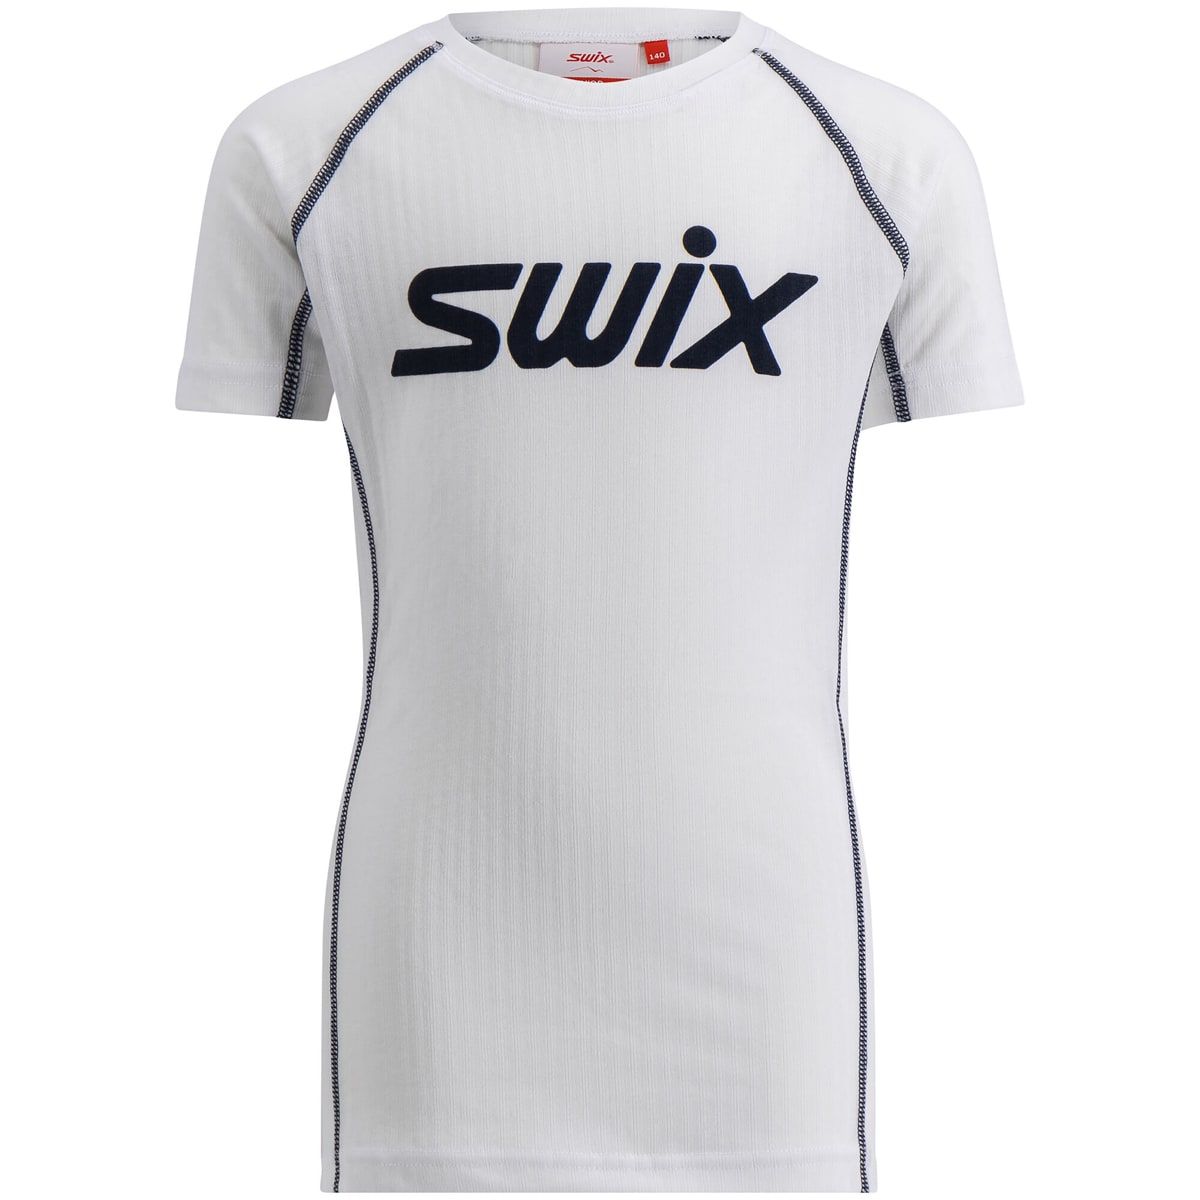 Swix Racex Classic Short Sleeve M Bright White/Dark Navy